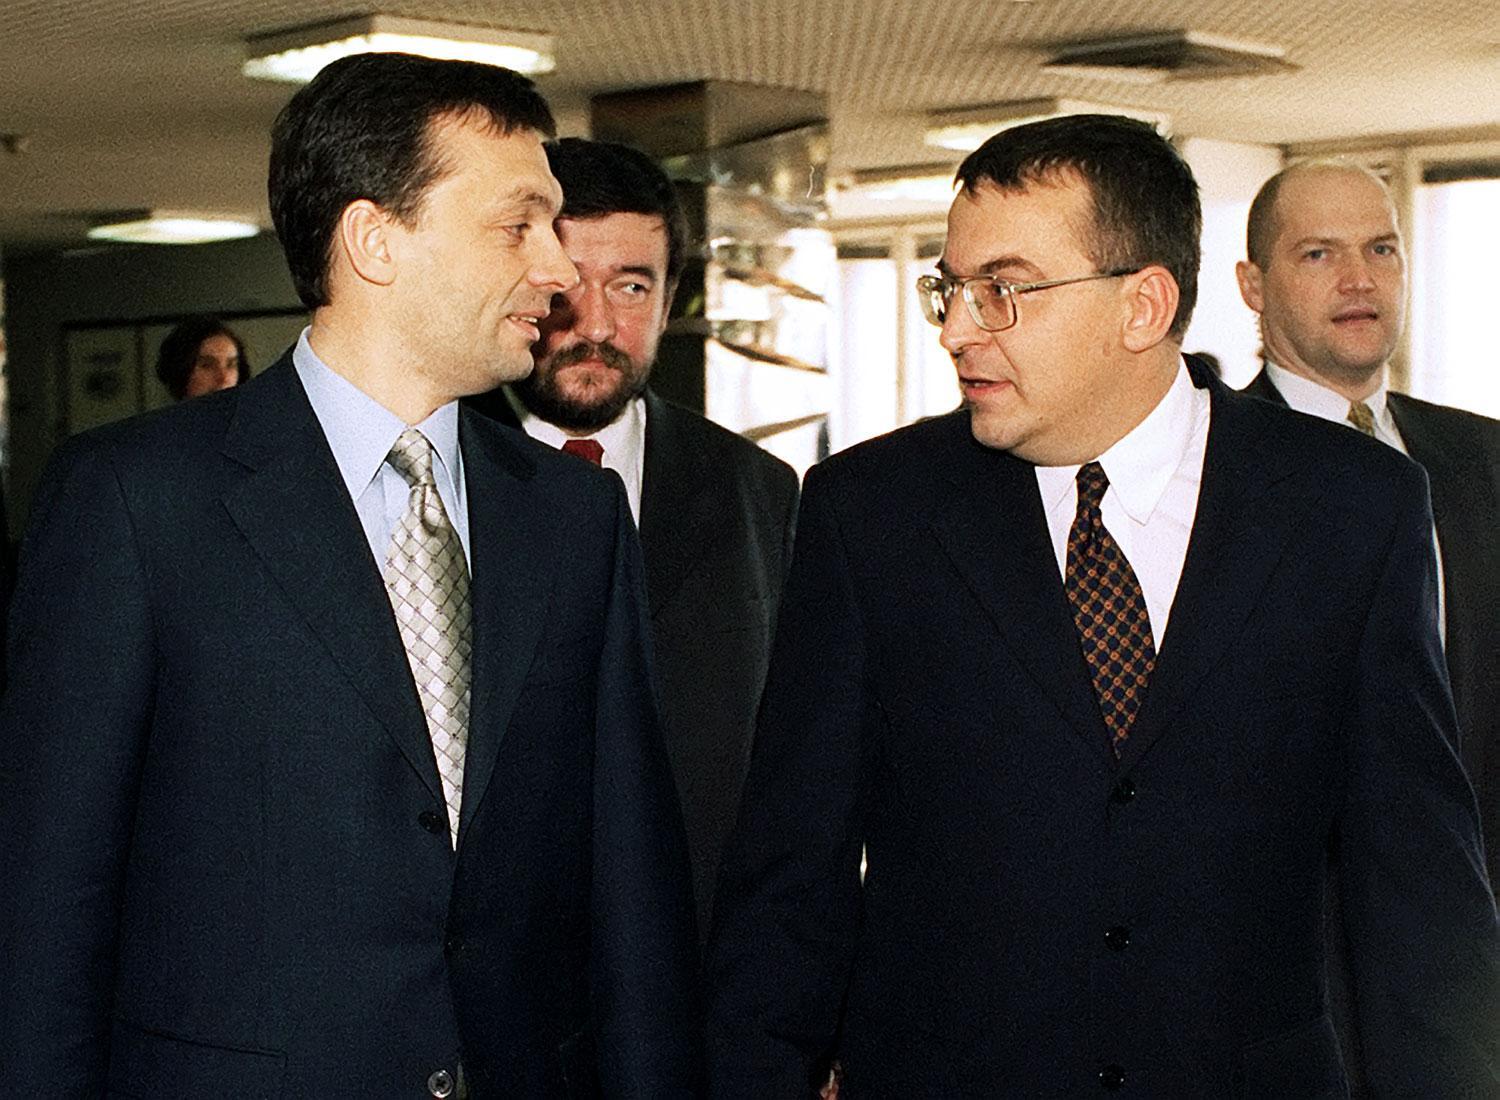 Orbán és Simicska az utolsó közös felvételen 1999-ben